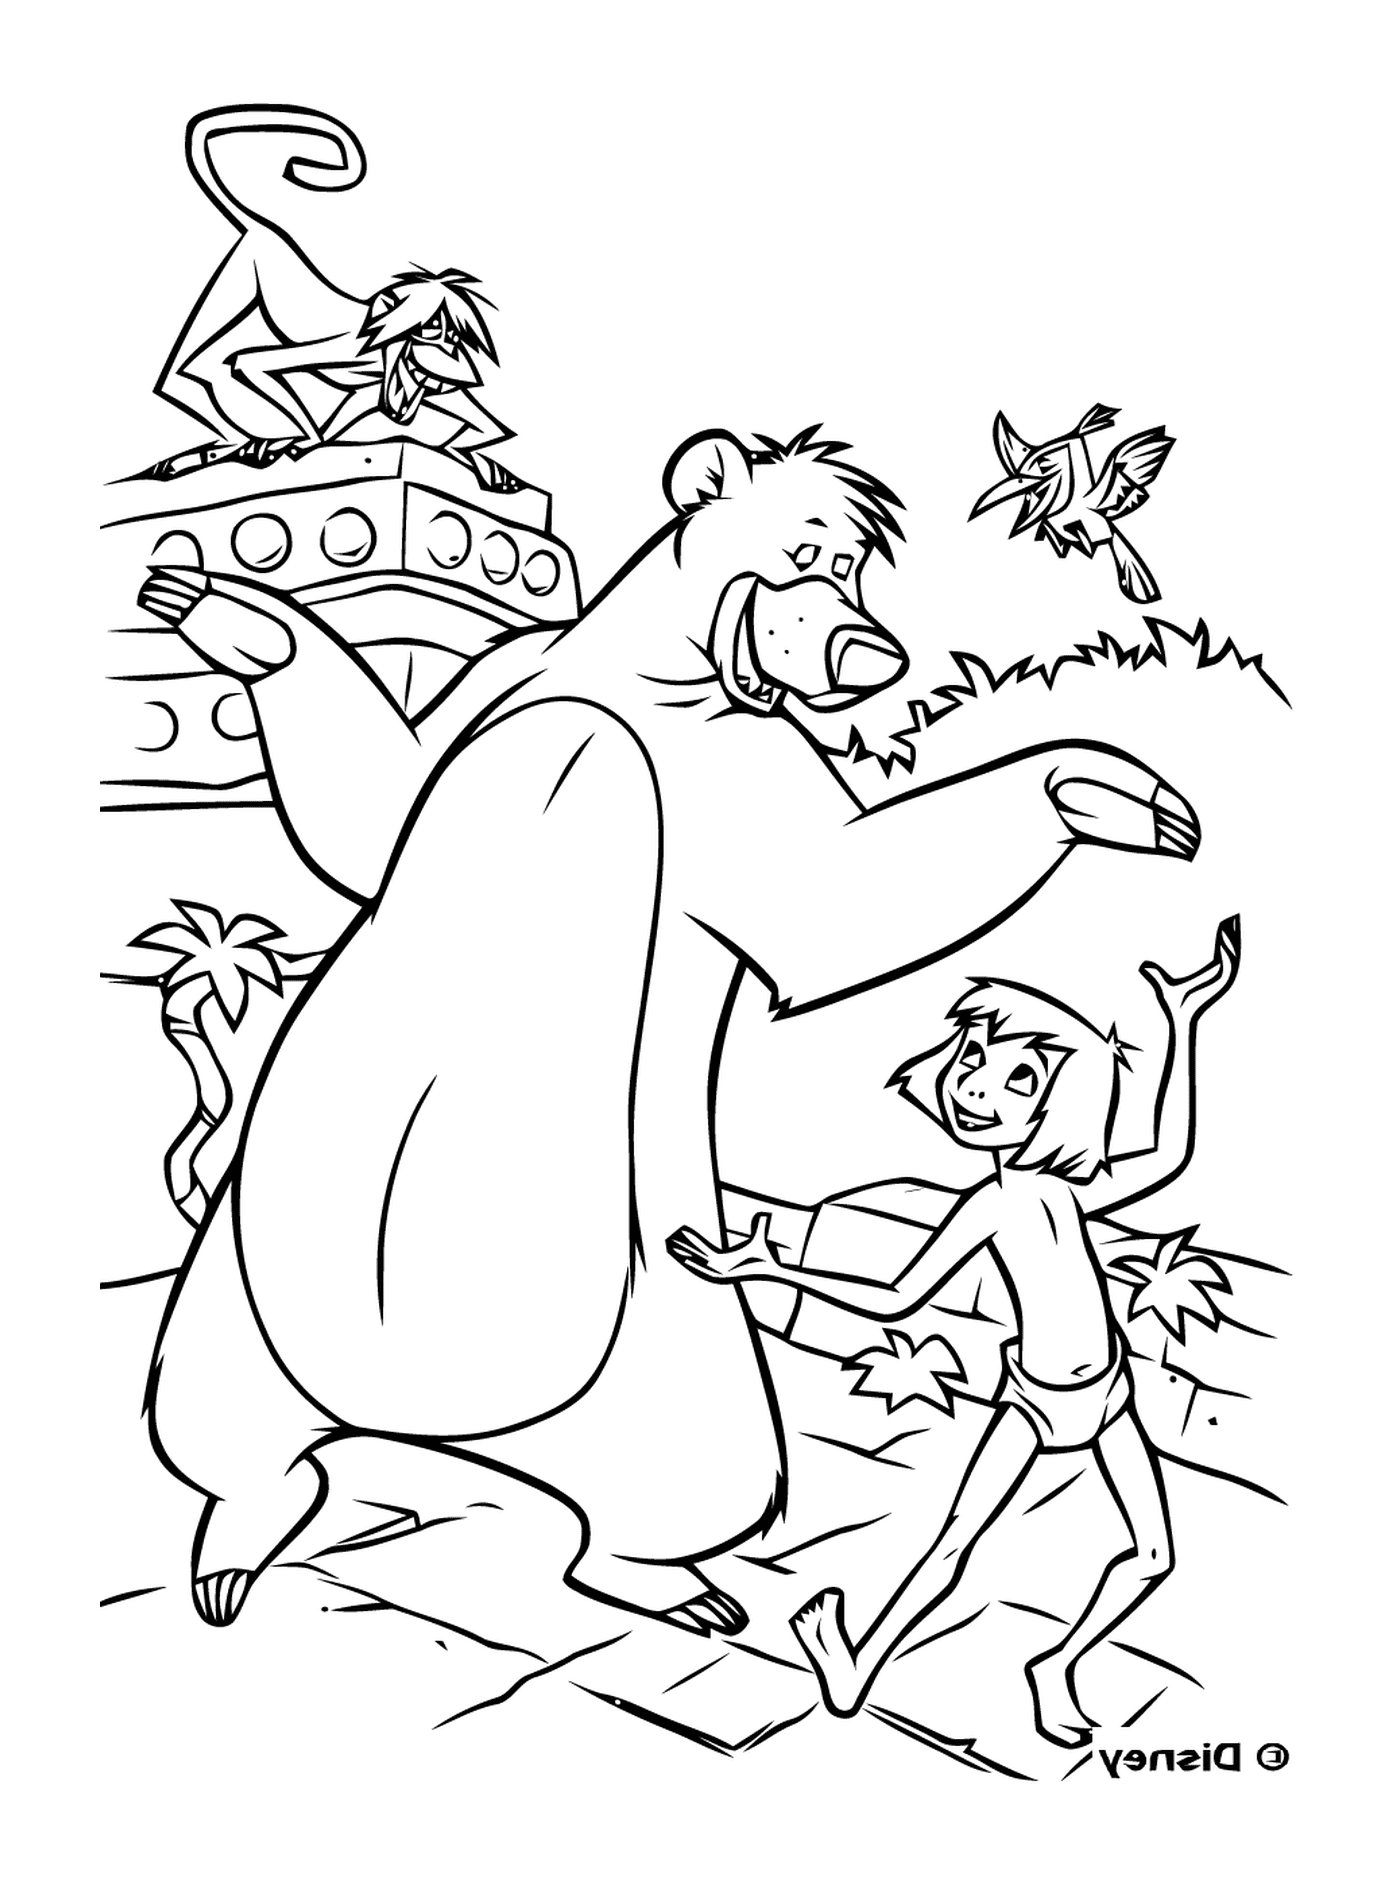  Человек и медведь стоят перед лодкой 